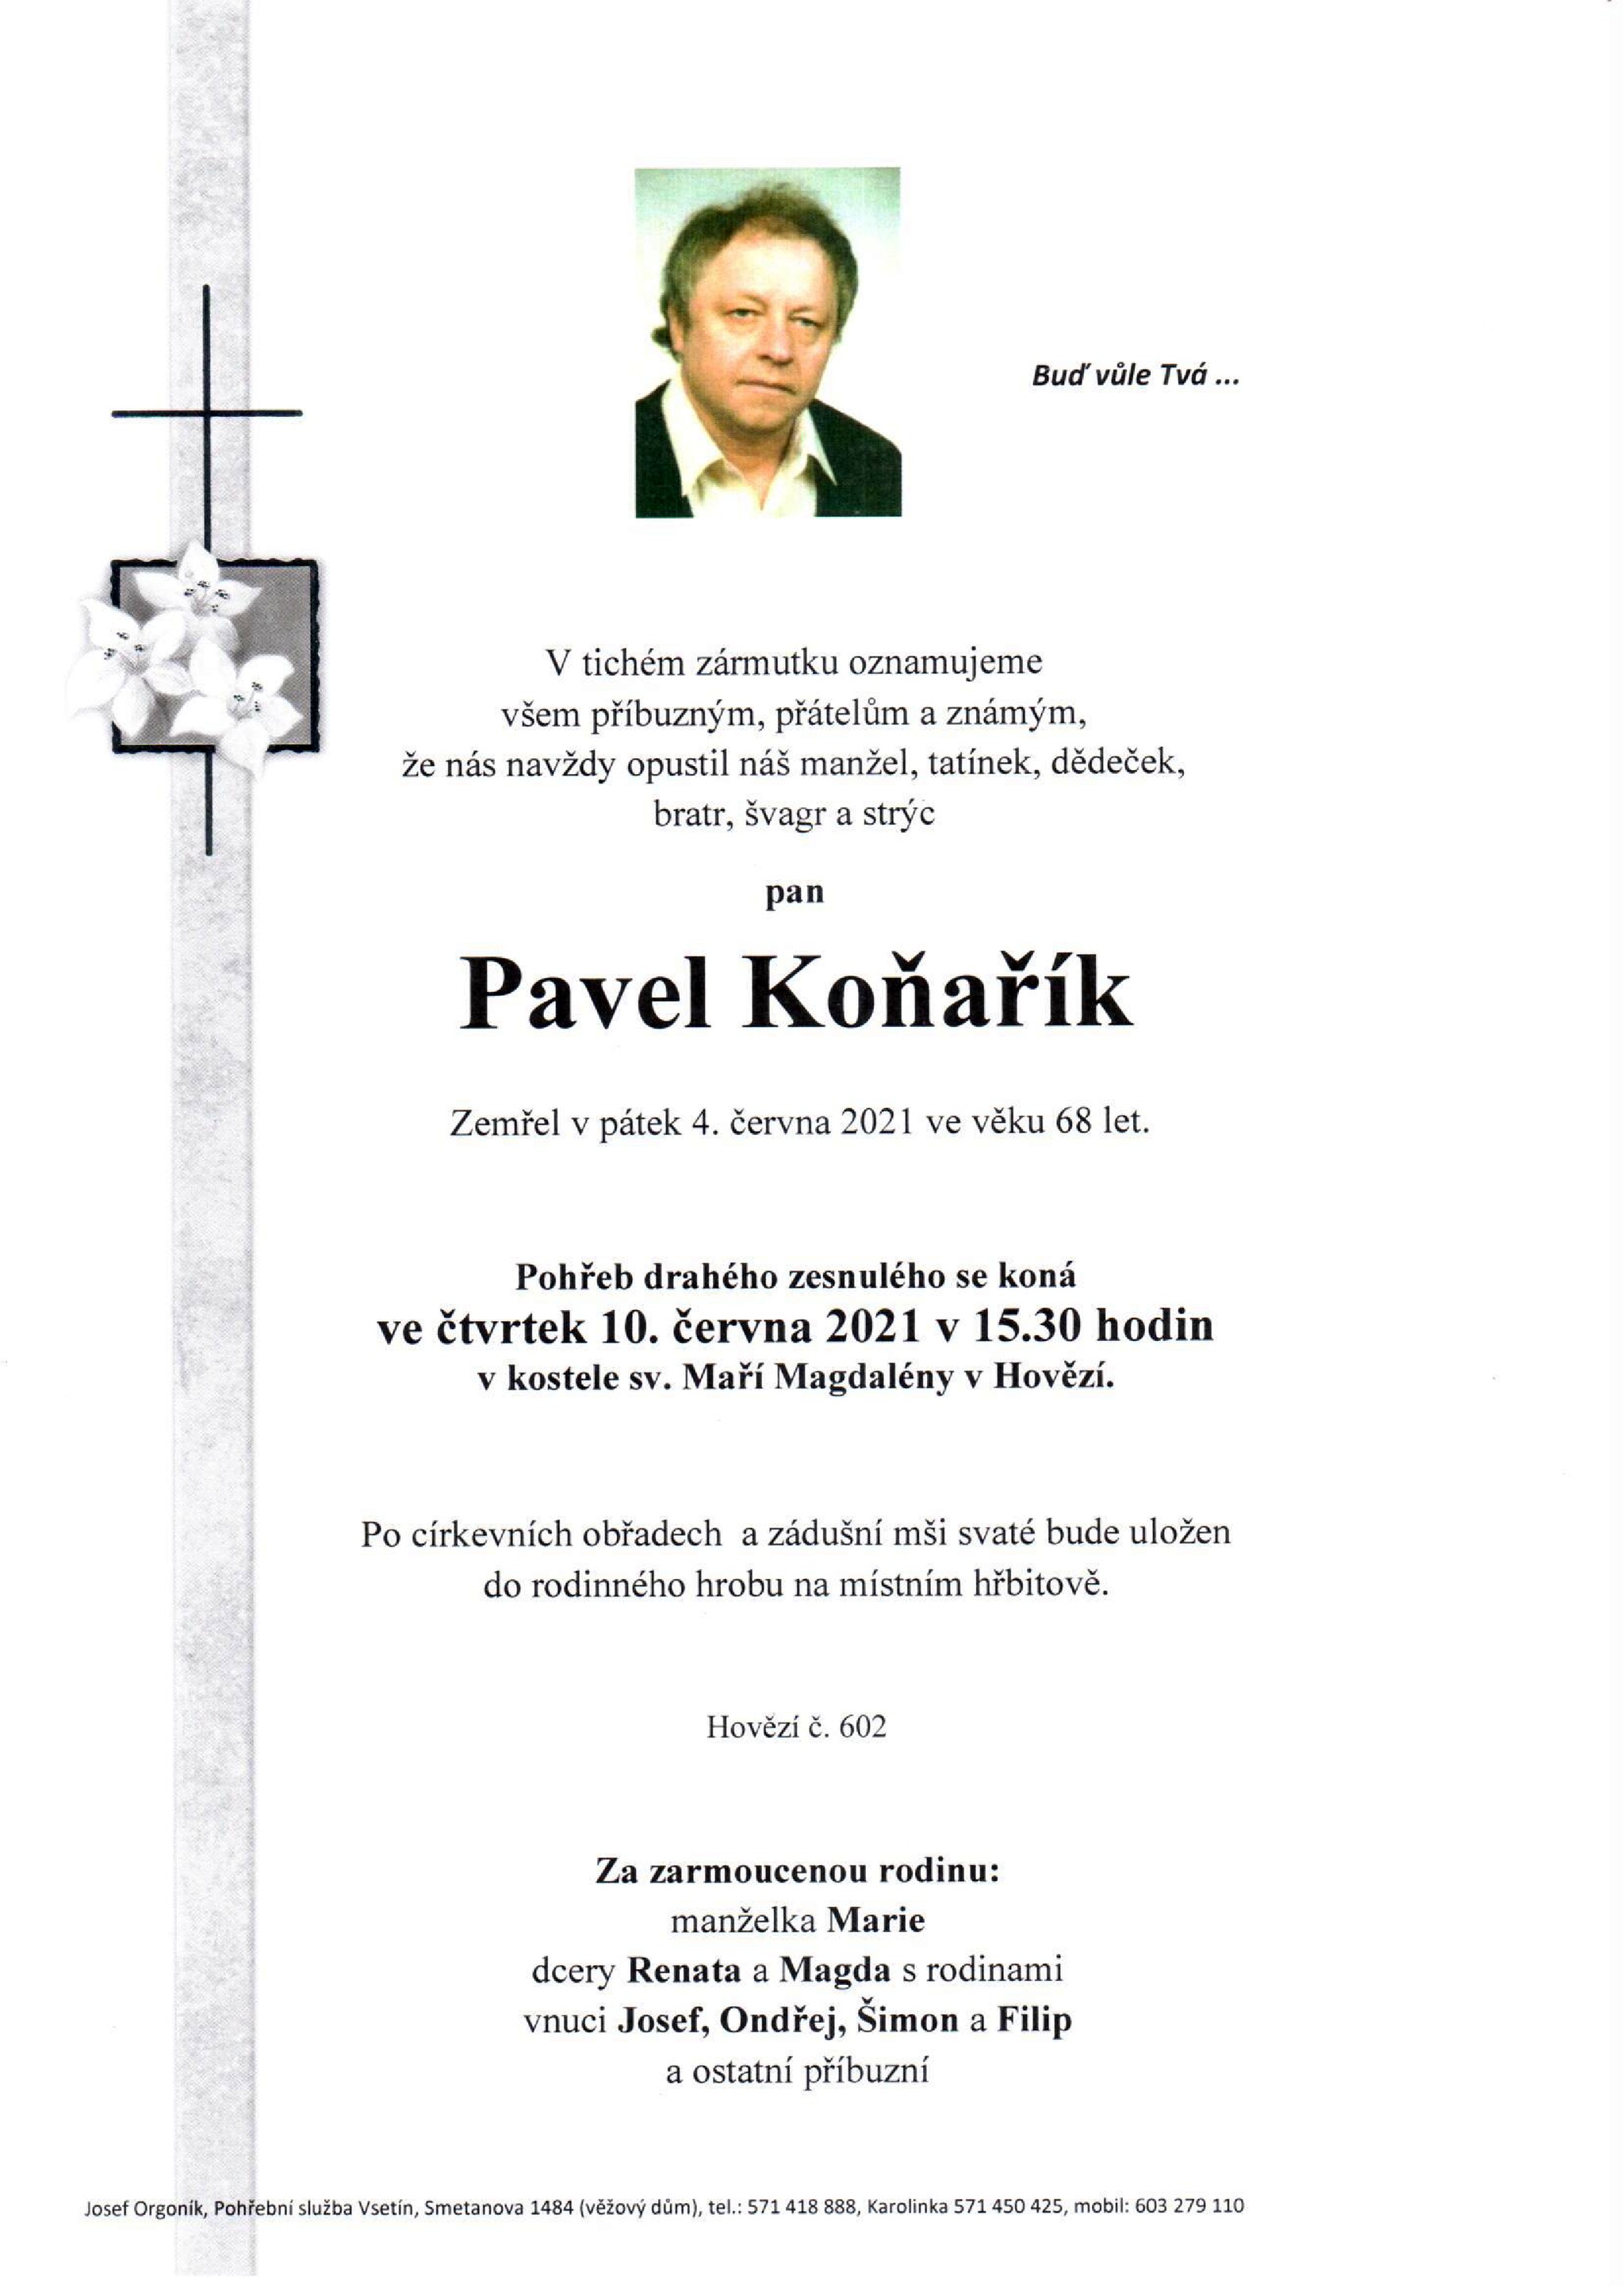 Pavel Koňařík